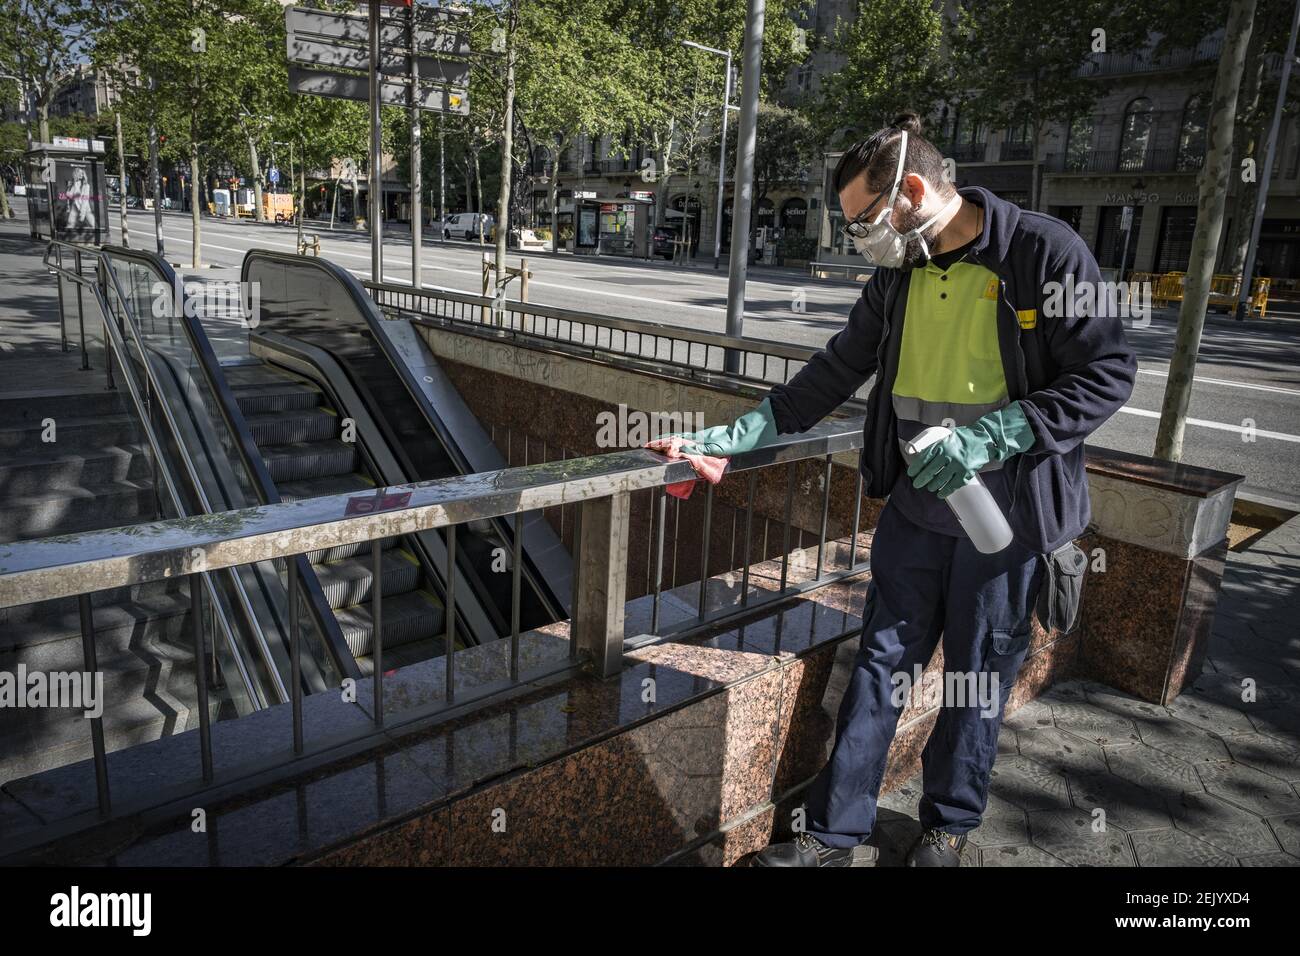 Él mismo Experto Realista Se ve a un trabajador del transporte metropolitano de Barcelona (TMB)  desinfectando las estructuras de acceso al metro durante el primer día de  trabajo para sectores no esenciales. A pesar de que